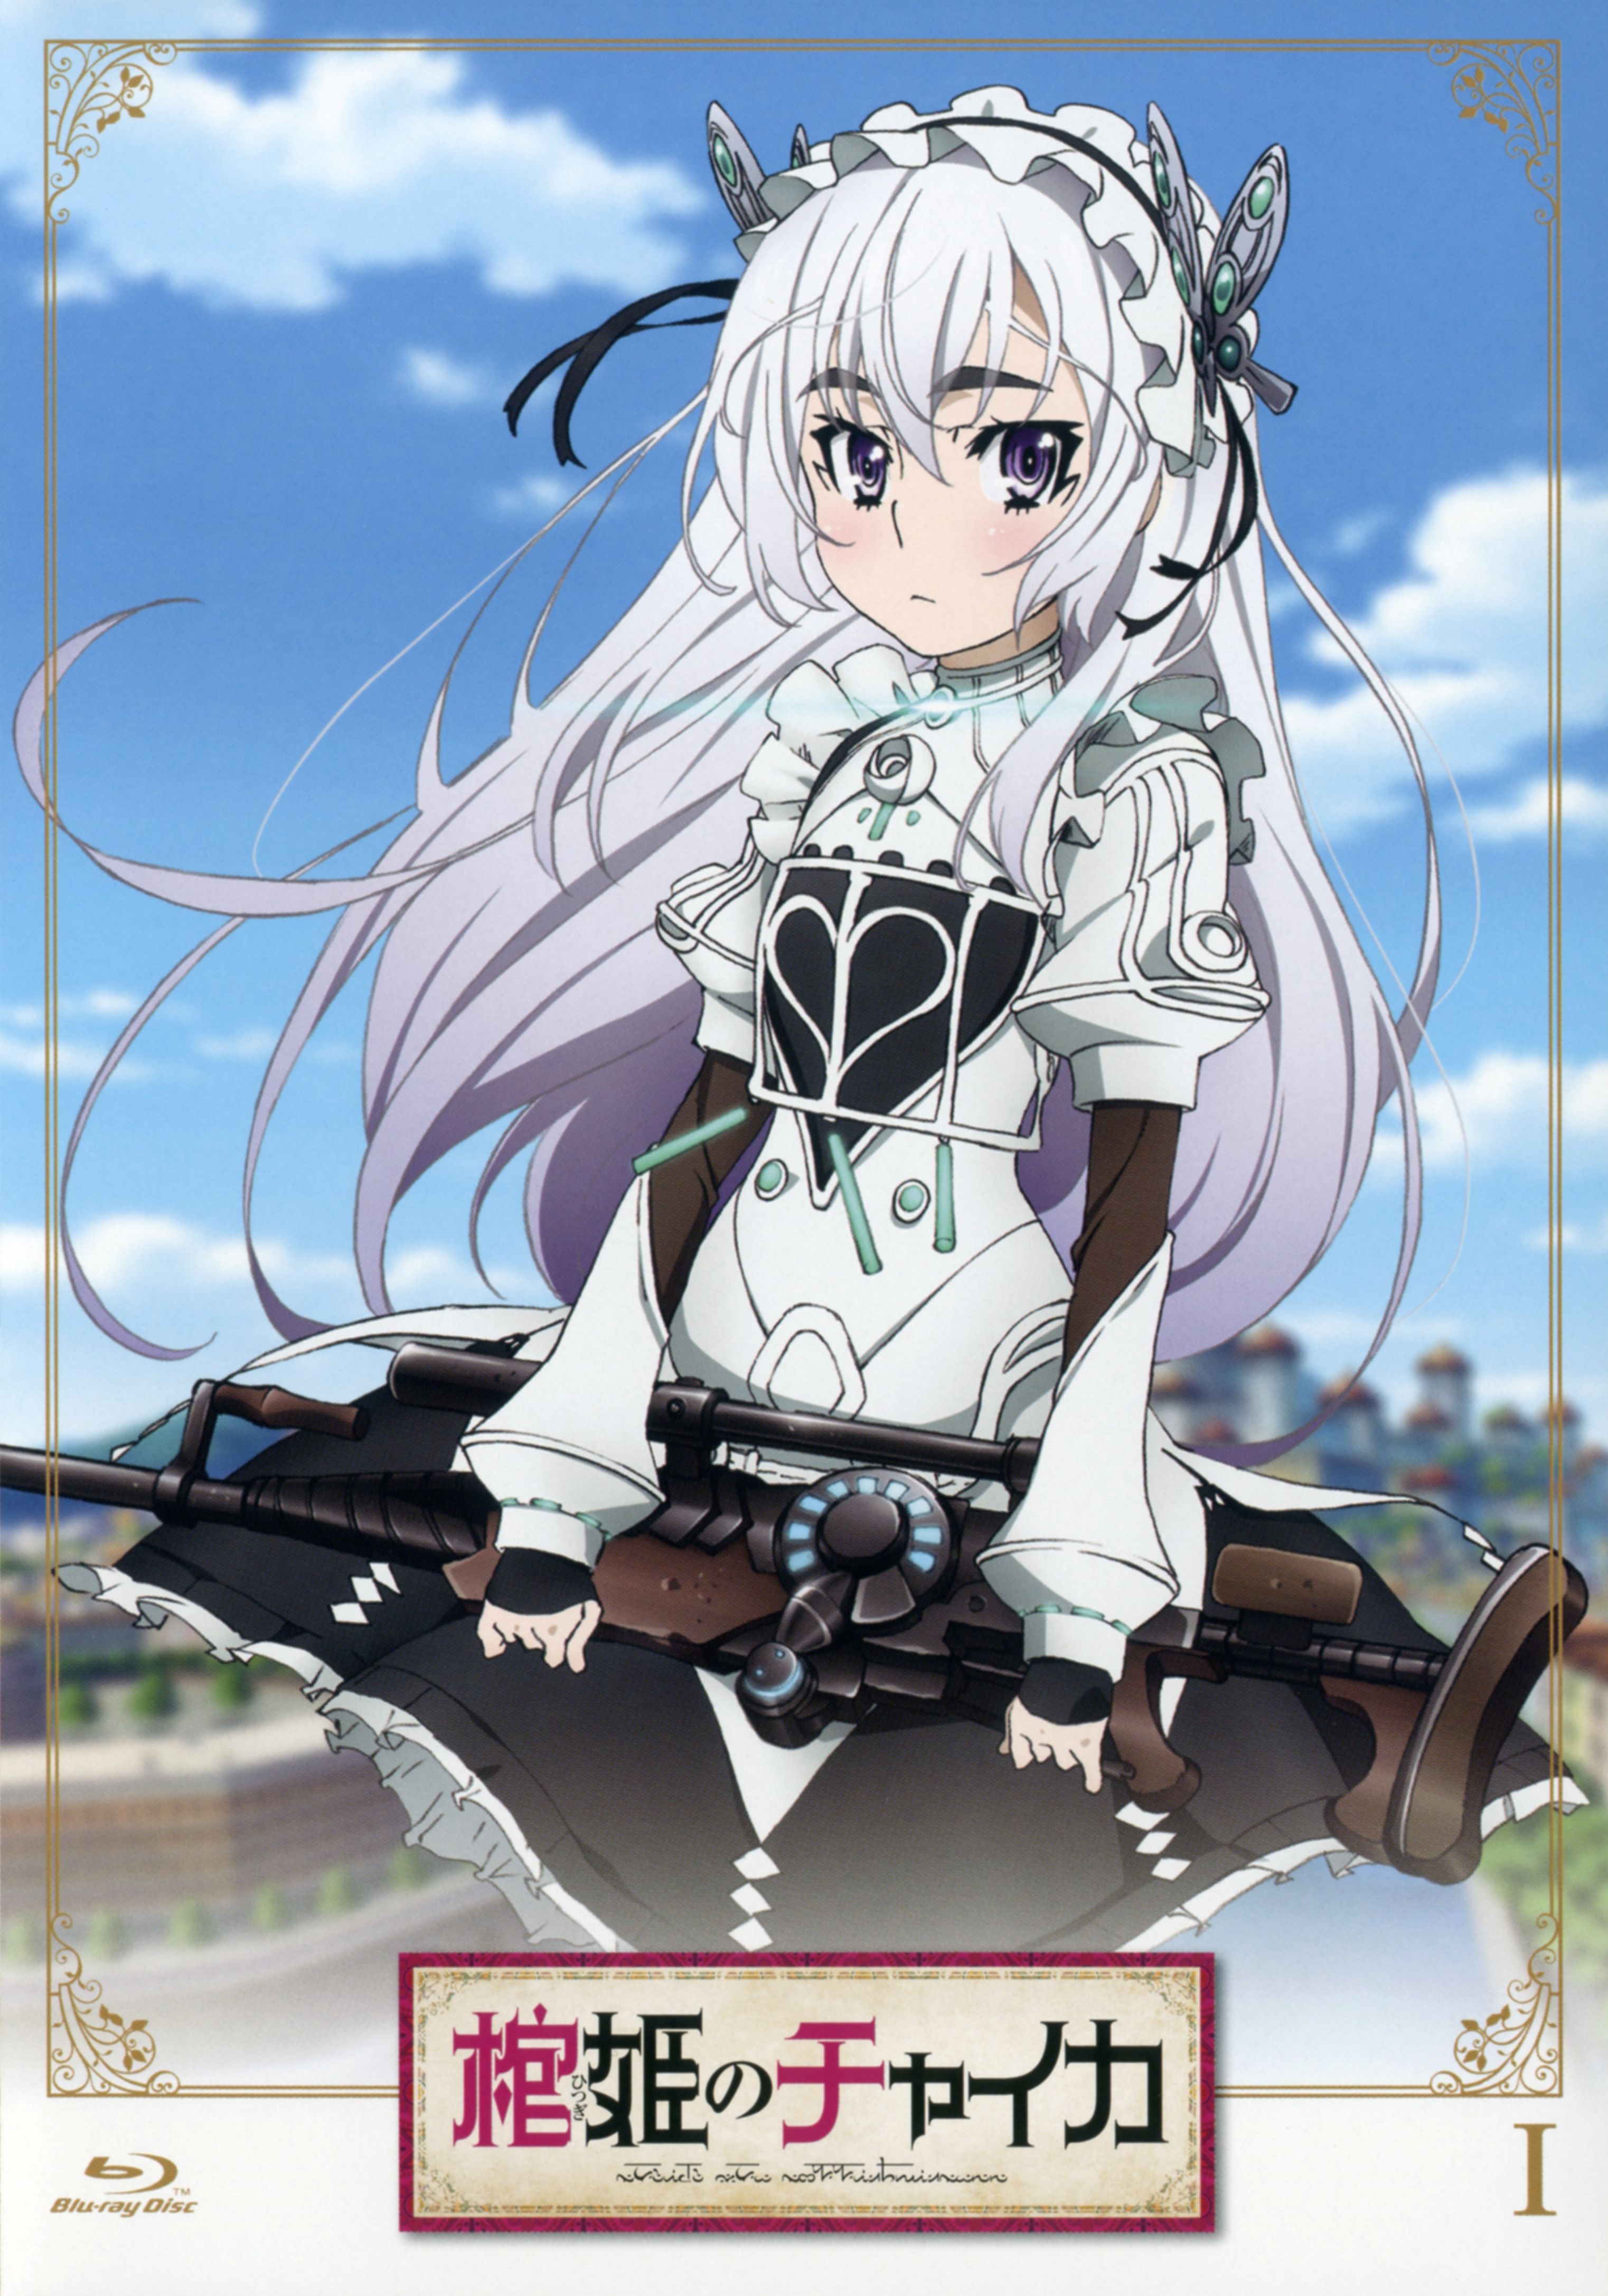 Hitsugi no Chaika (Chaika Coffin Princess) Anime Image Board